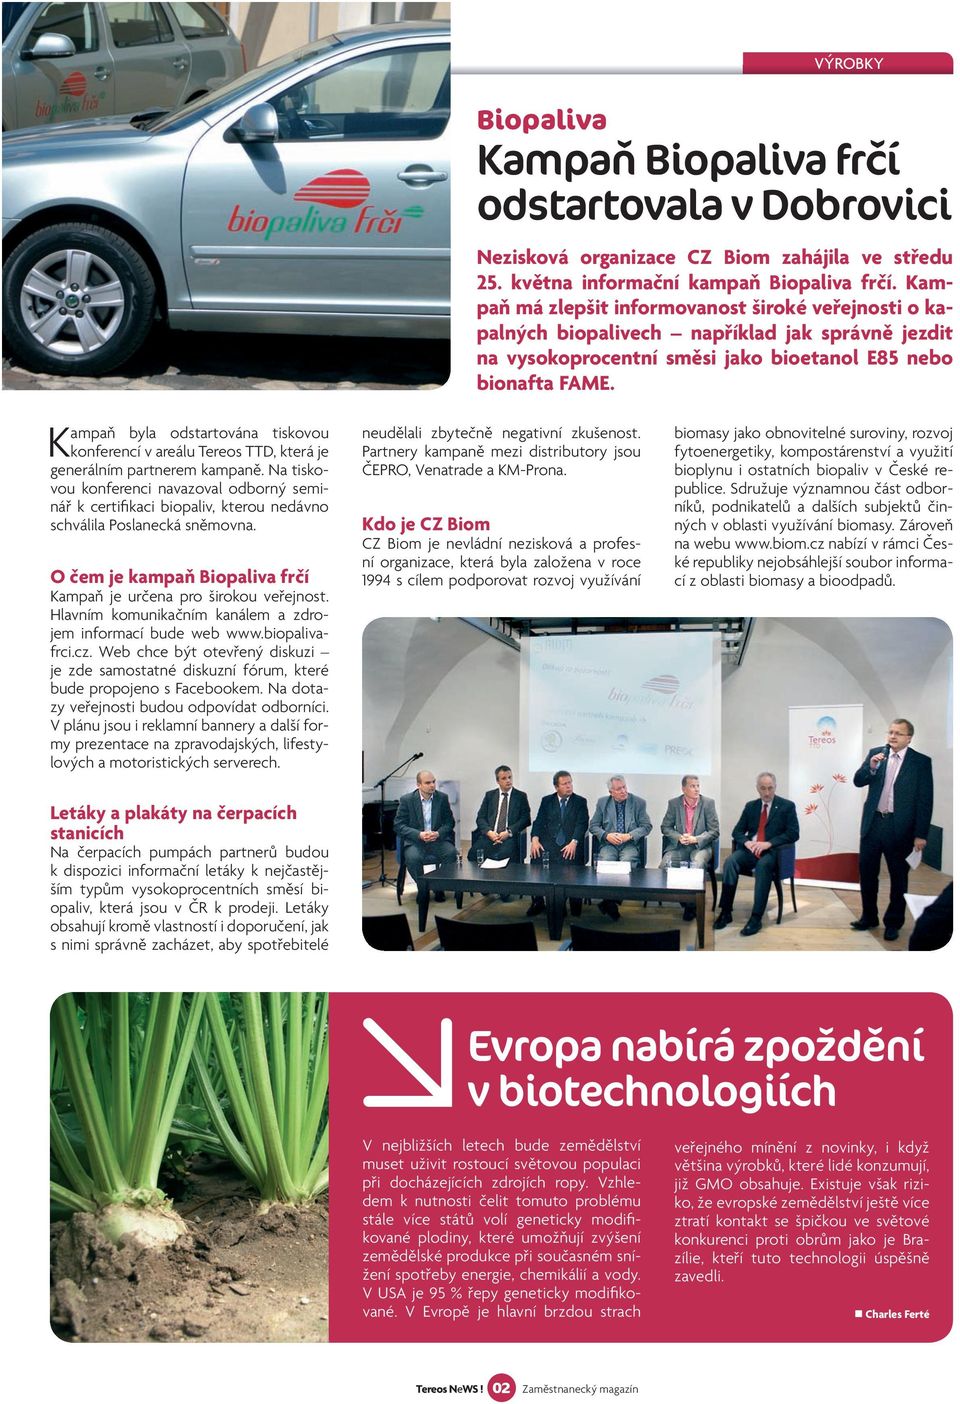 Hlavním komunikačním kanálem a zdrojem informací bude web www.biopalivafrci.cz. Web chce být otevřený diskuzi je zde samostatné diskuzní fórum, které bude propojeno s Facebookem.